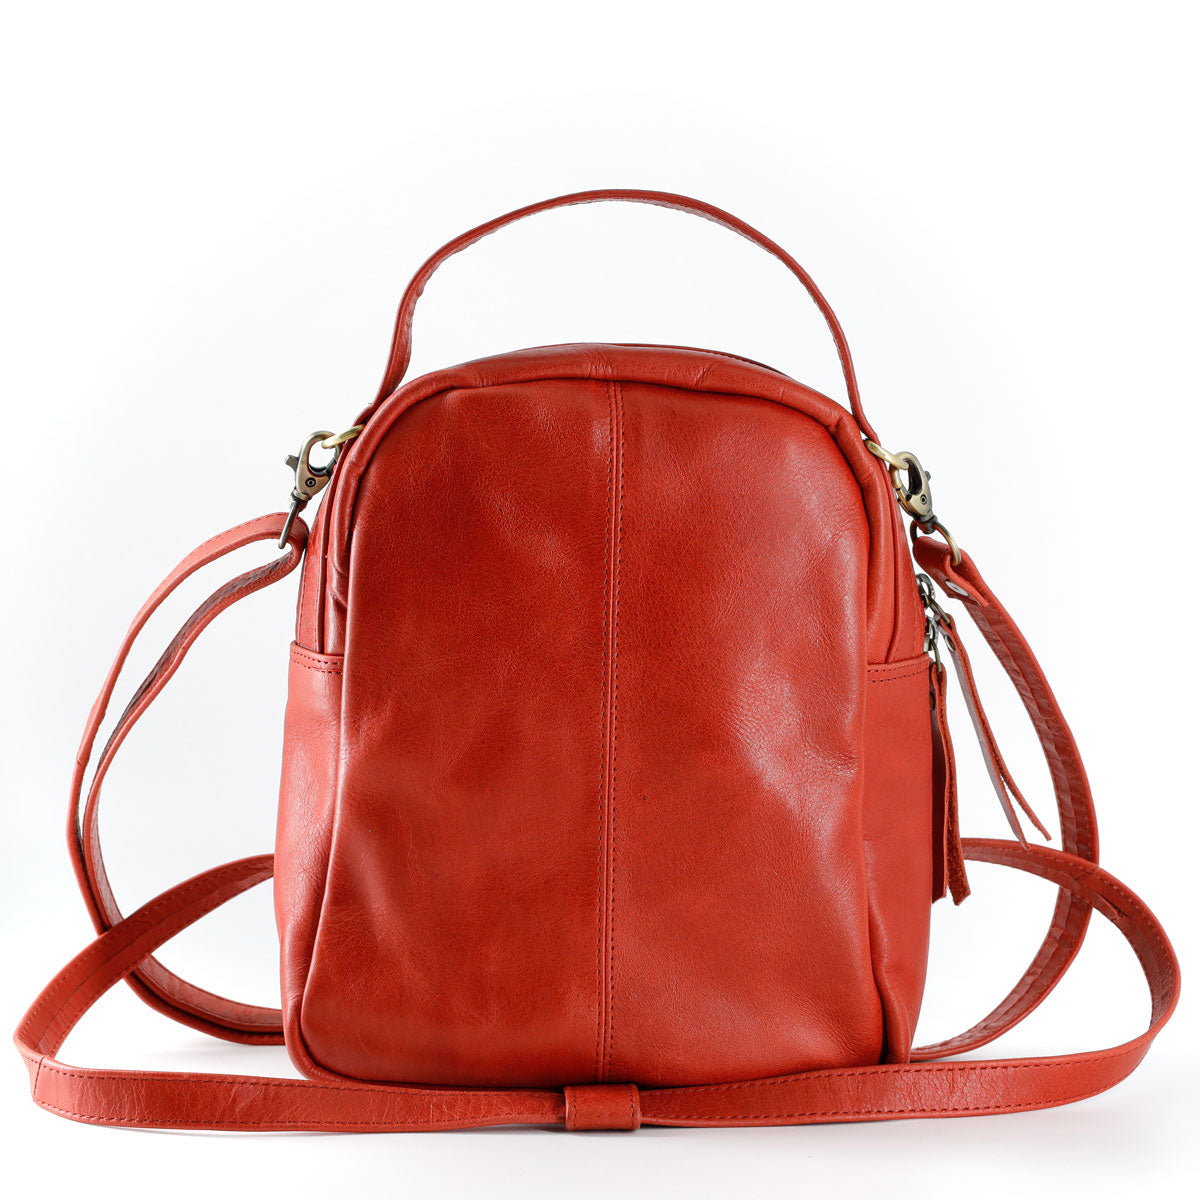 Shoulder Handbag Backpack Bags for Women Men - Crossbody School Studen